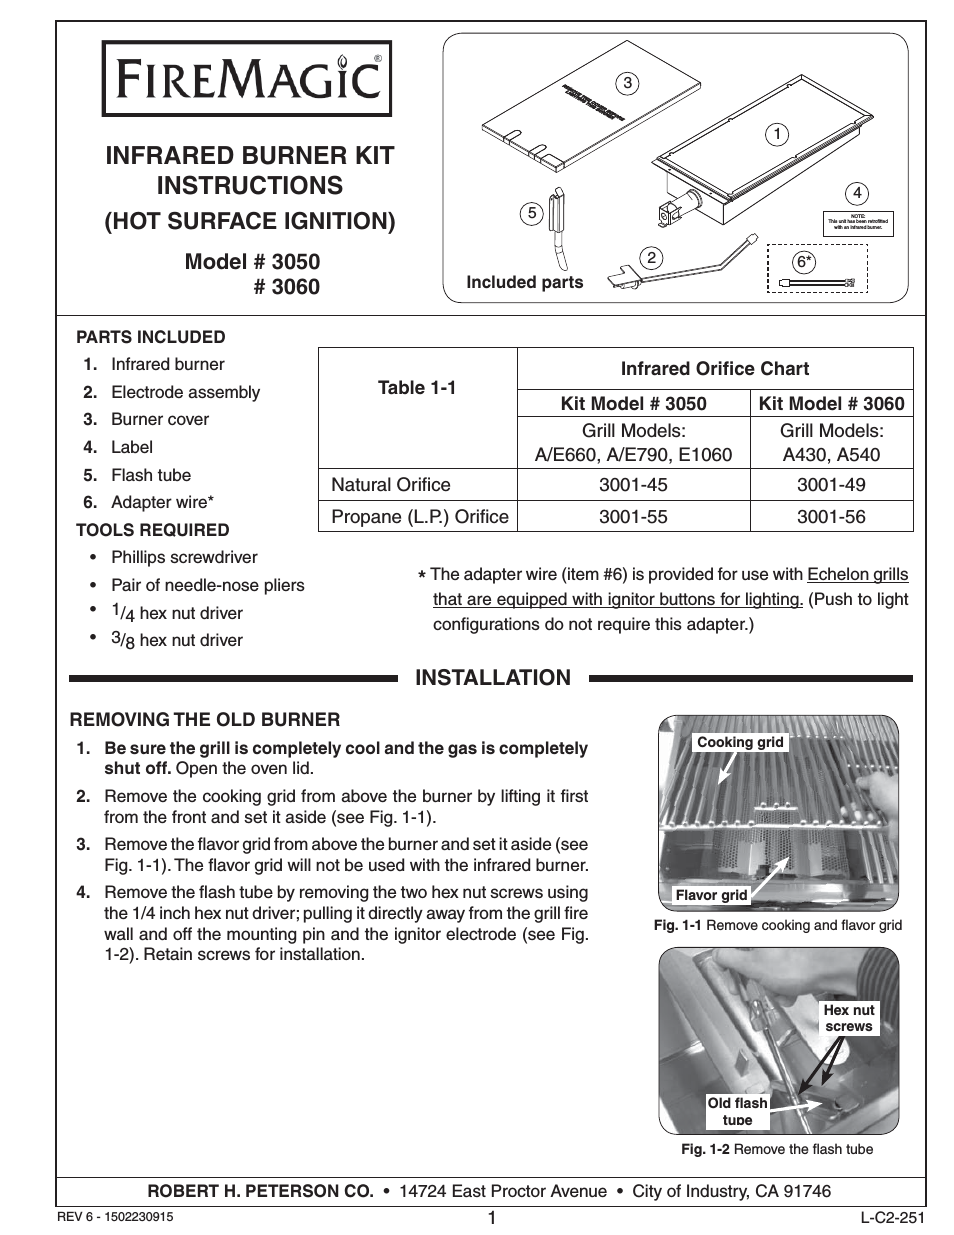 3060 Infrared Burnet Kit